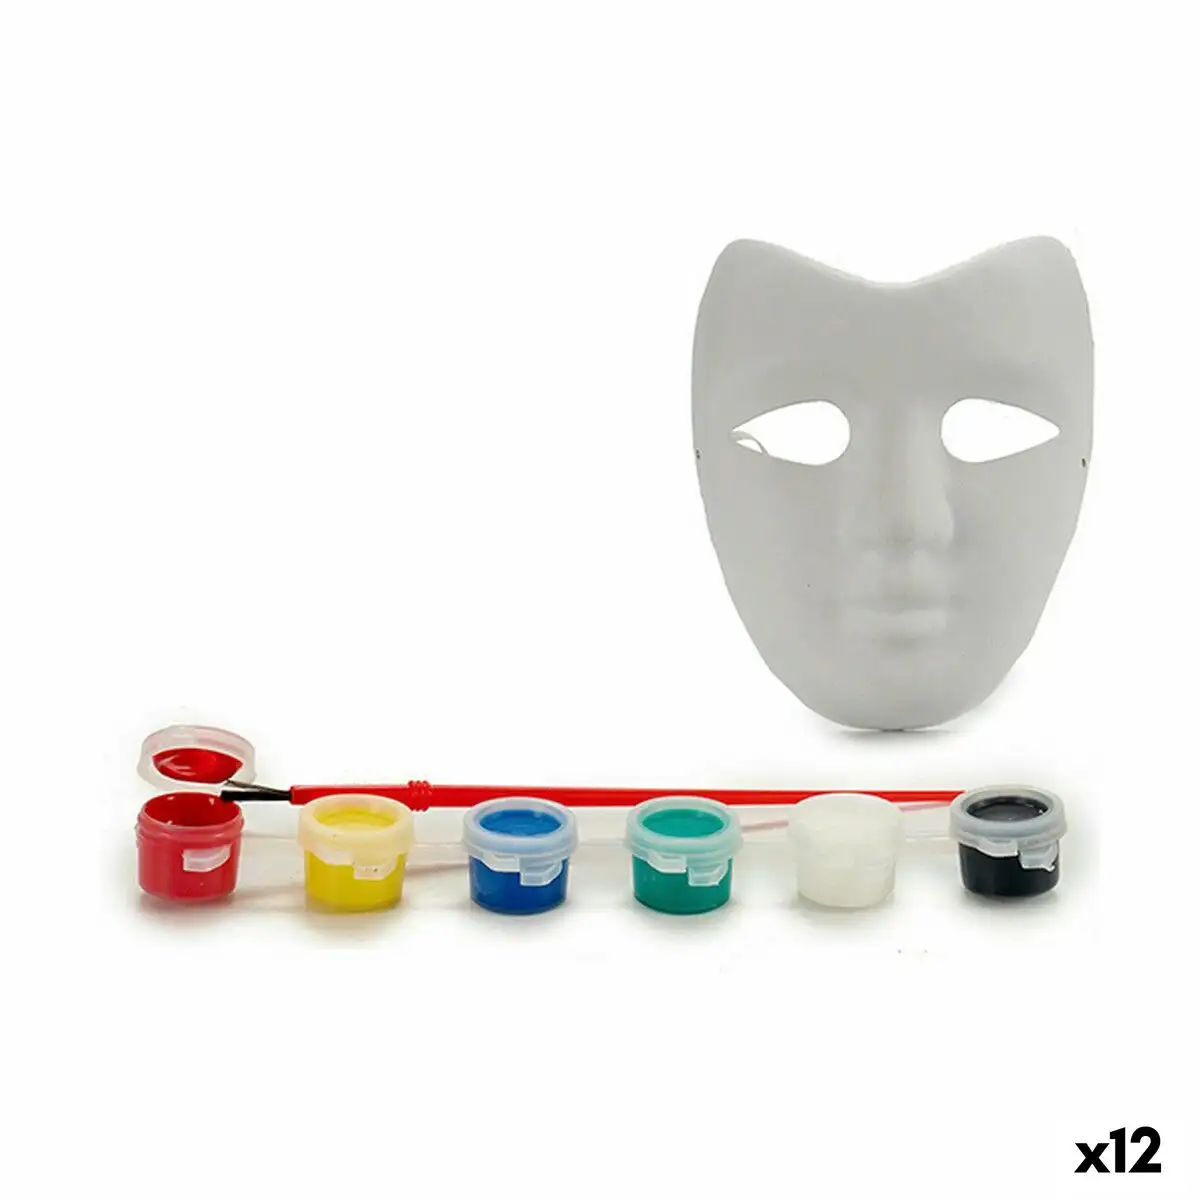 Ensemble pour activites manuelles masque blanc plastique 12 unites _3911. DIAYTAR SENEGAL - L'Art de Choisir, l'Art de Vivre. Parcourez notre boutique en ligne et choisissez parmi des produits de qualité qui ajoutent de l'élégance à votre quotidien.